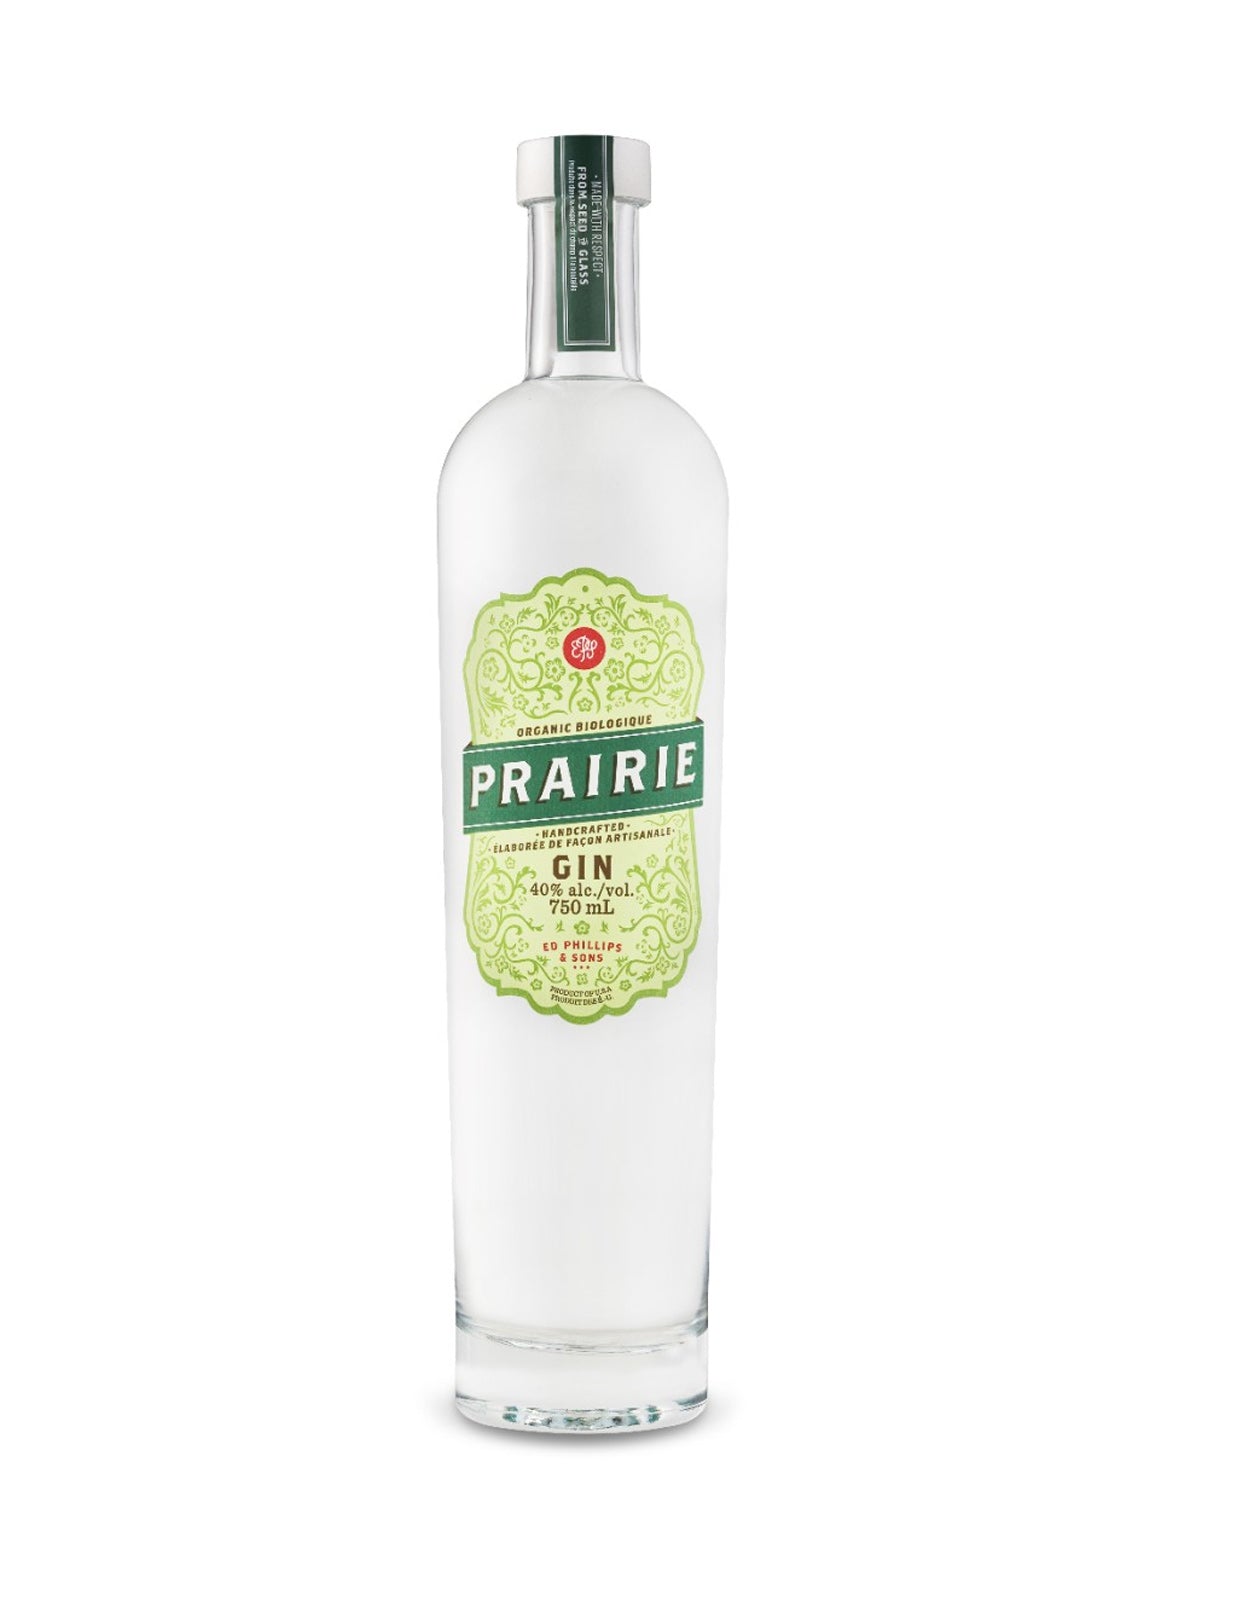 Prairie Organic Gin